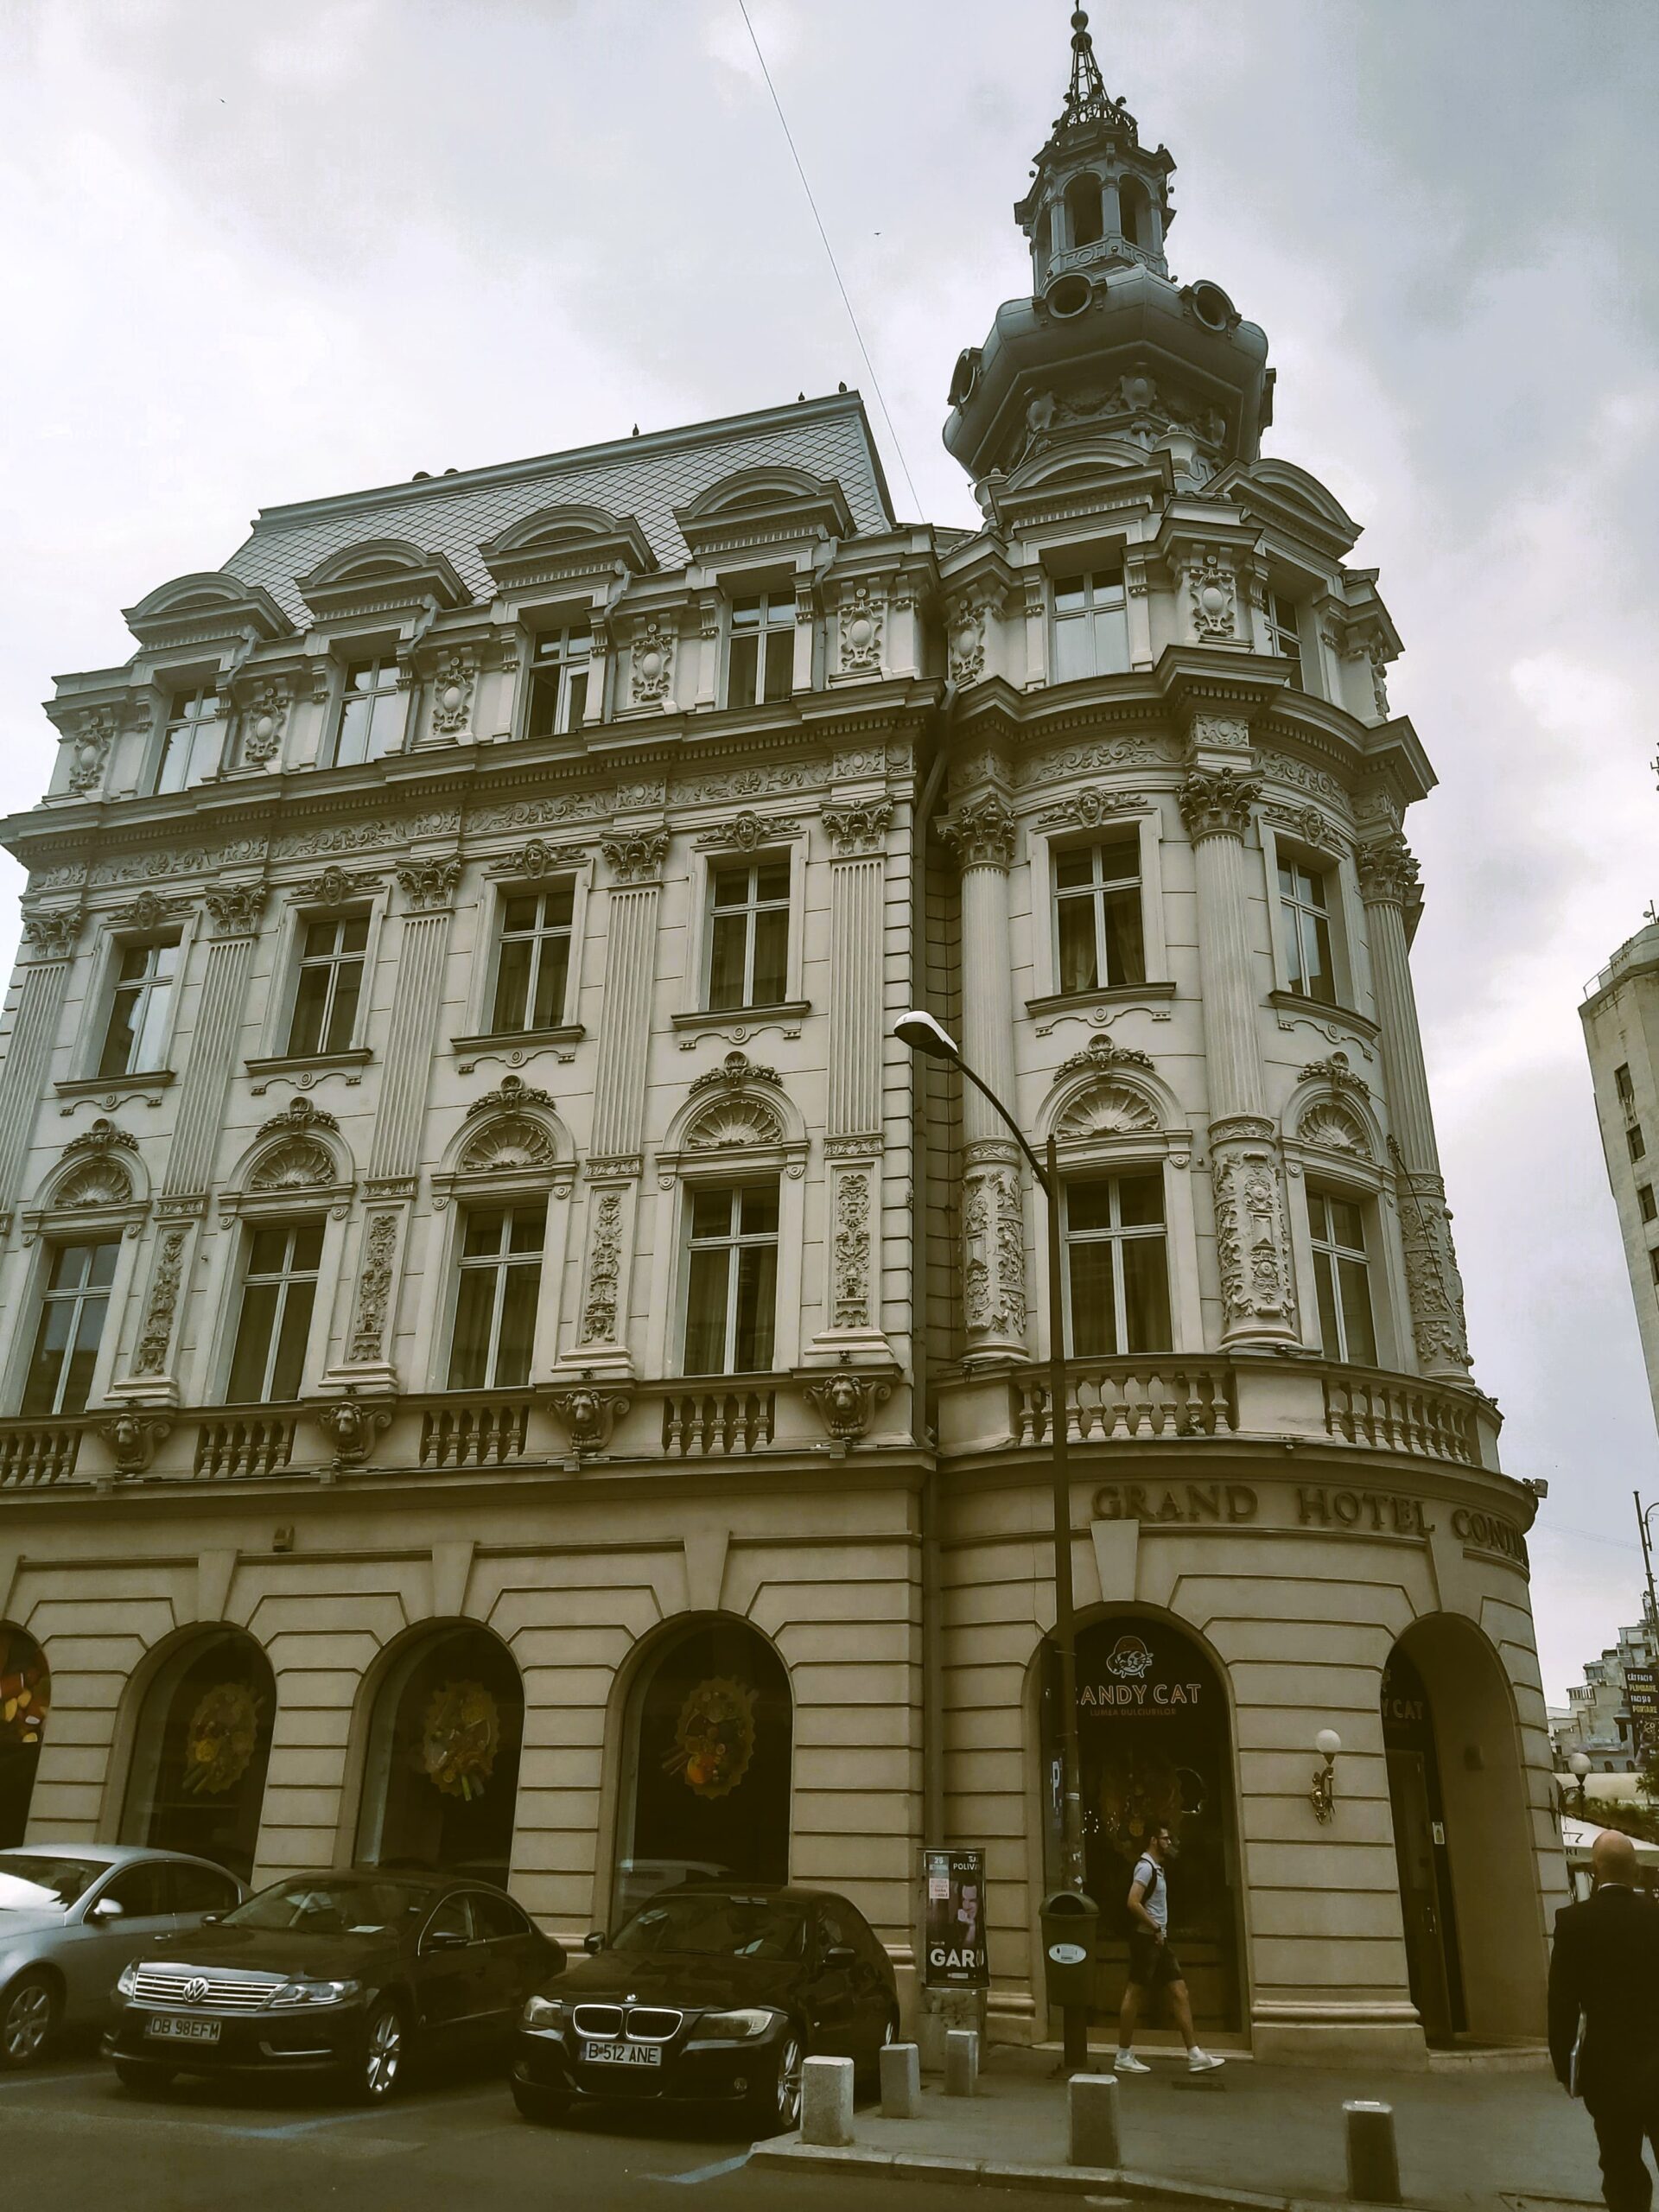 An old building in București, Romania